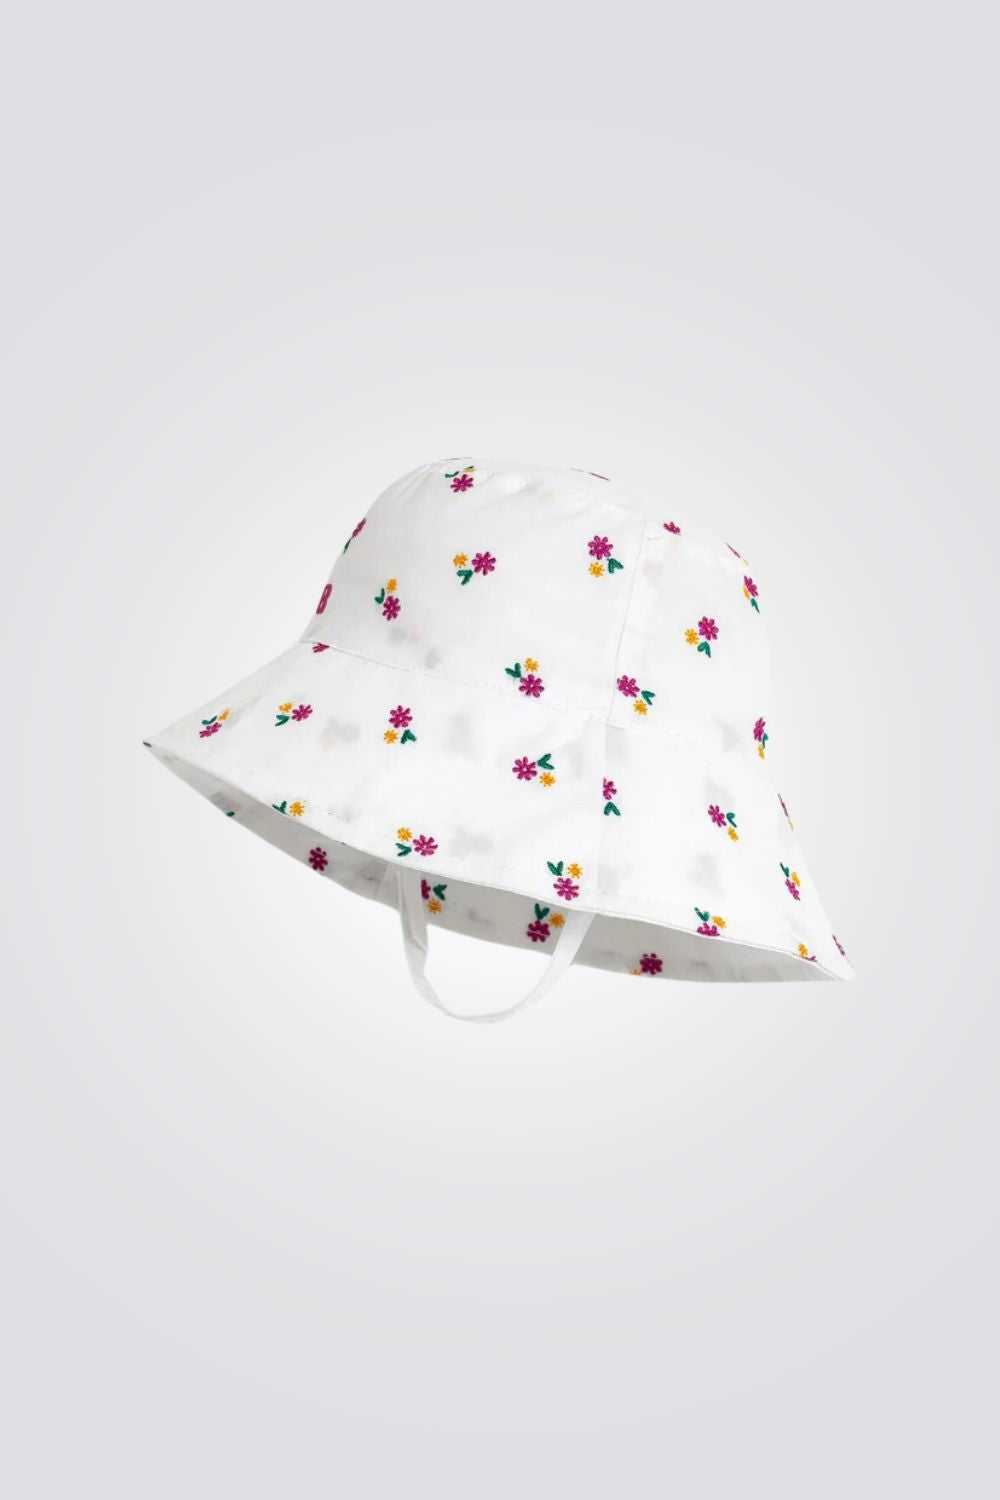 כובע שמש לתינוקת בצבע לבן עם הדפס פרחוני